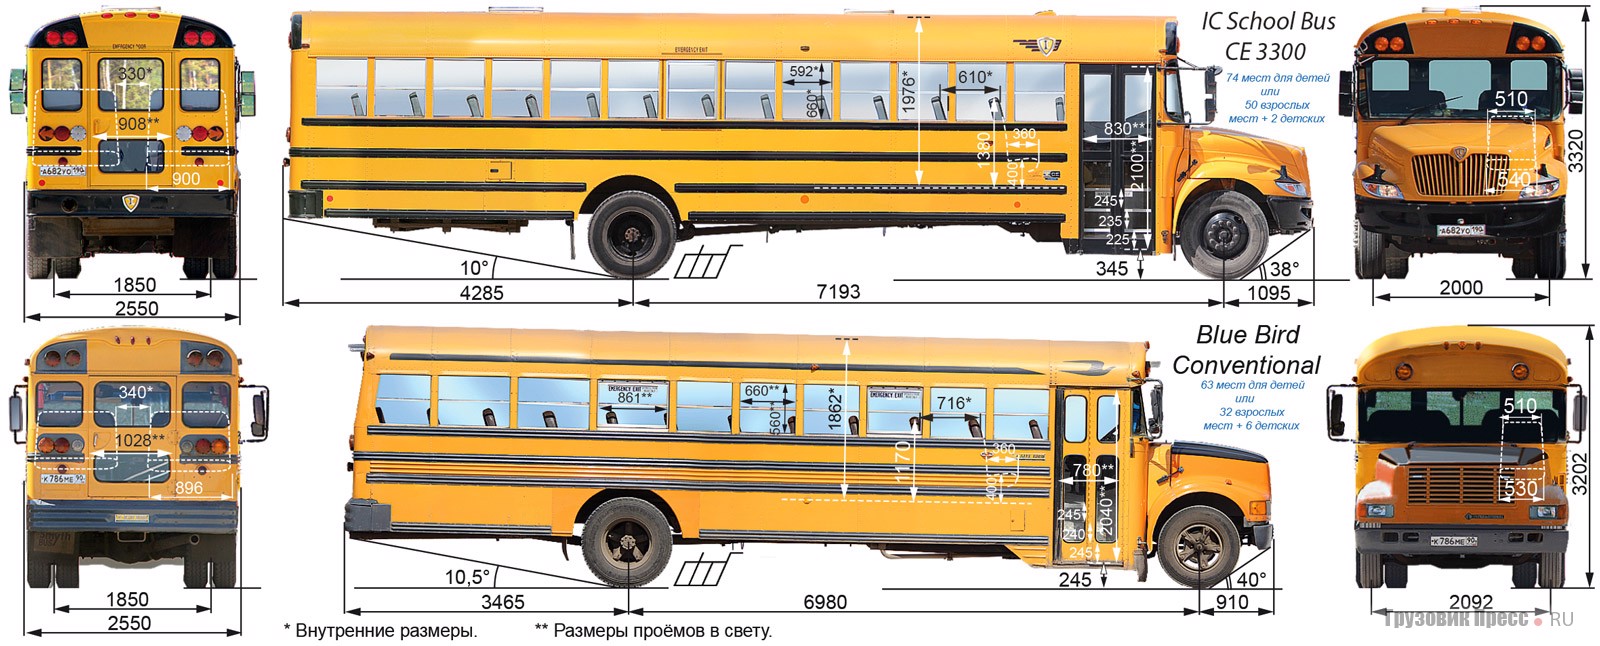 Школьный автобус характеристики. Ic School Bus ce 3300. Школьный автобус США Размеры. Американский школьный автобус габариты. Американский школьный автобус чертеж.